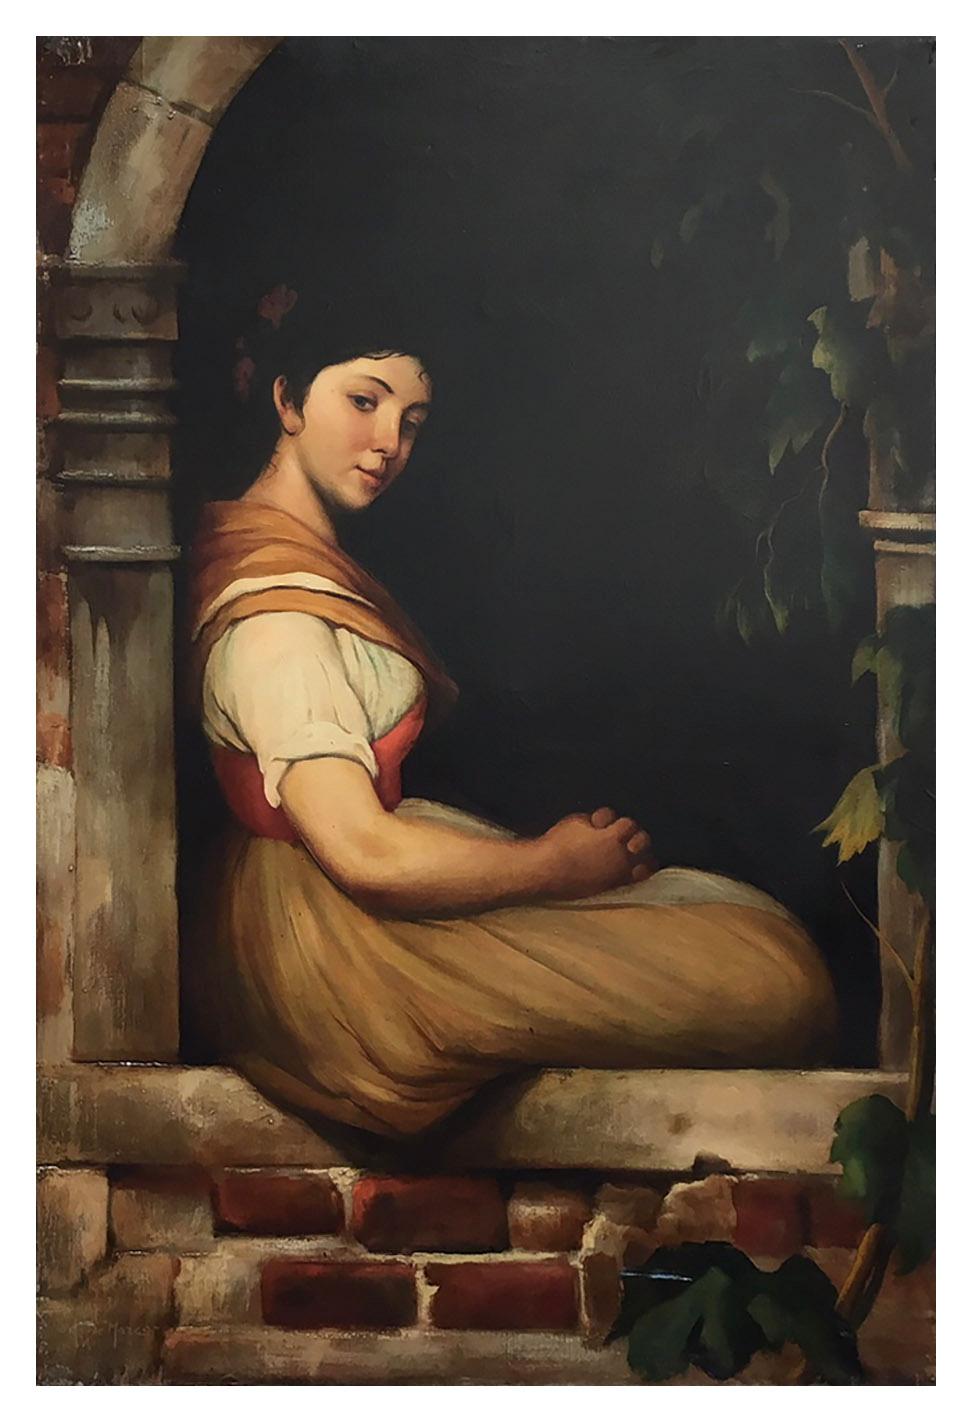 CHILD- A la manière de  W.A. Huile sur toile figurative italienne de Bouguereau  Peinture - Painting de Giovanni Santaniello